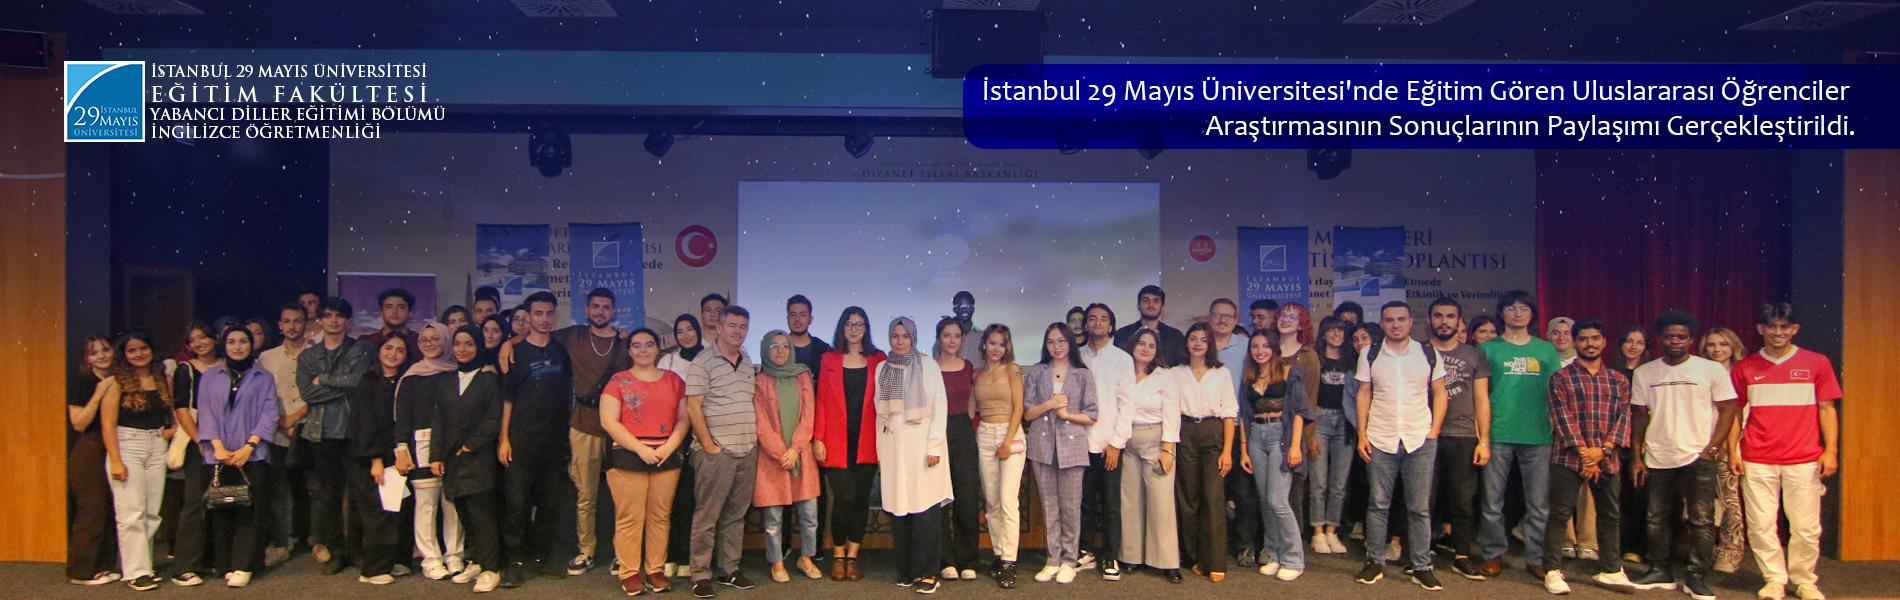 İstanbul 29 Mayıs Üniversitesi'nde Eğitim Gören Uluslararası Öğrenciler Araştırmasının Sonuçlarının Paylaşımı Gerçekleştirildi